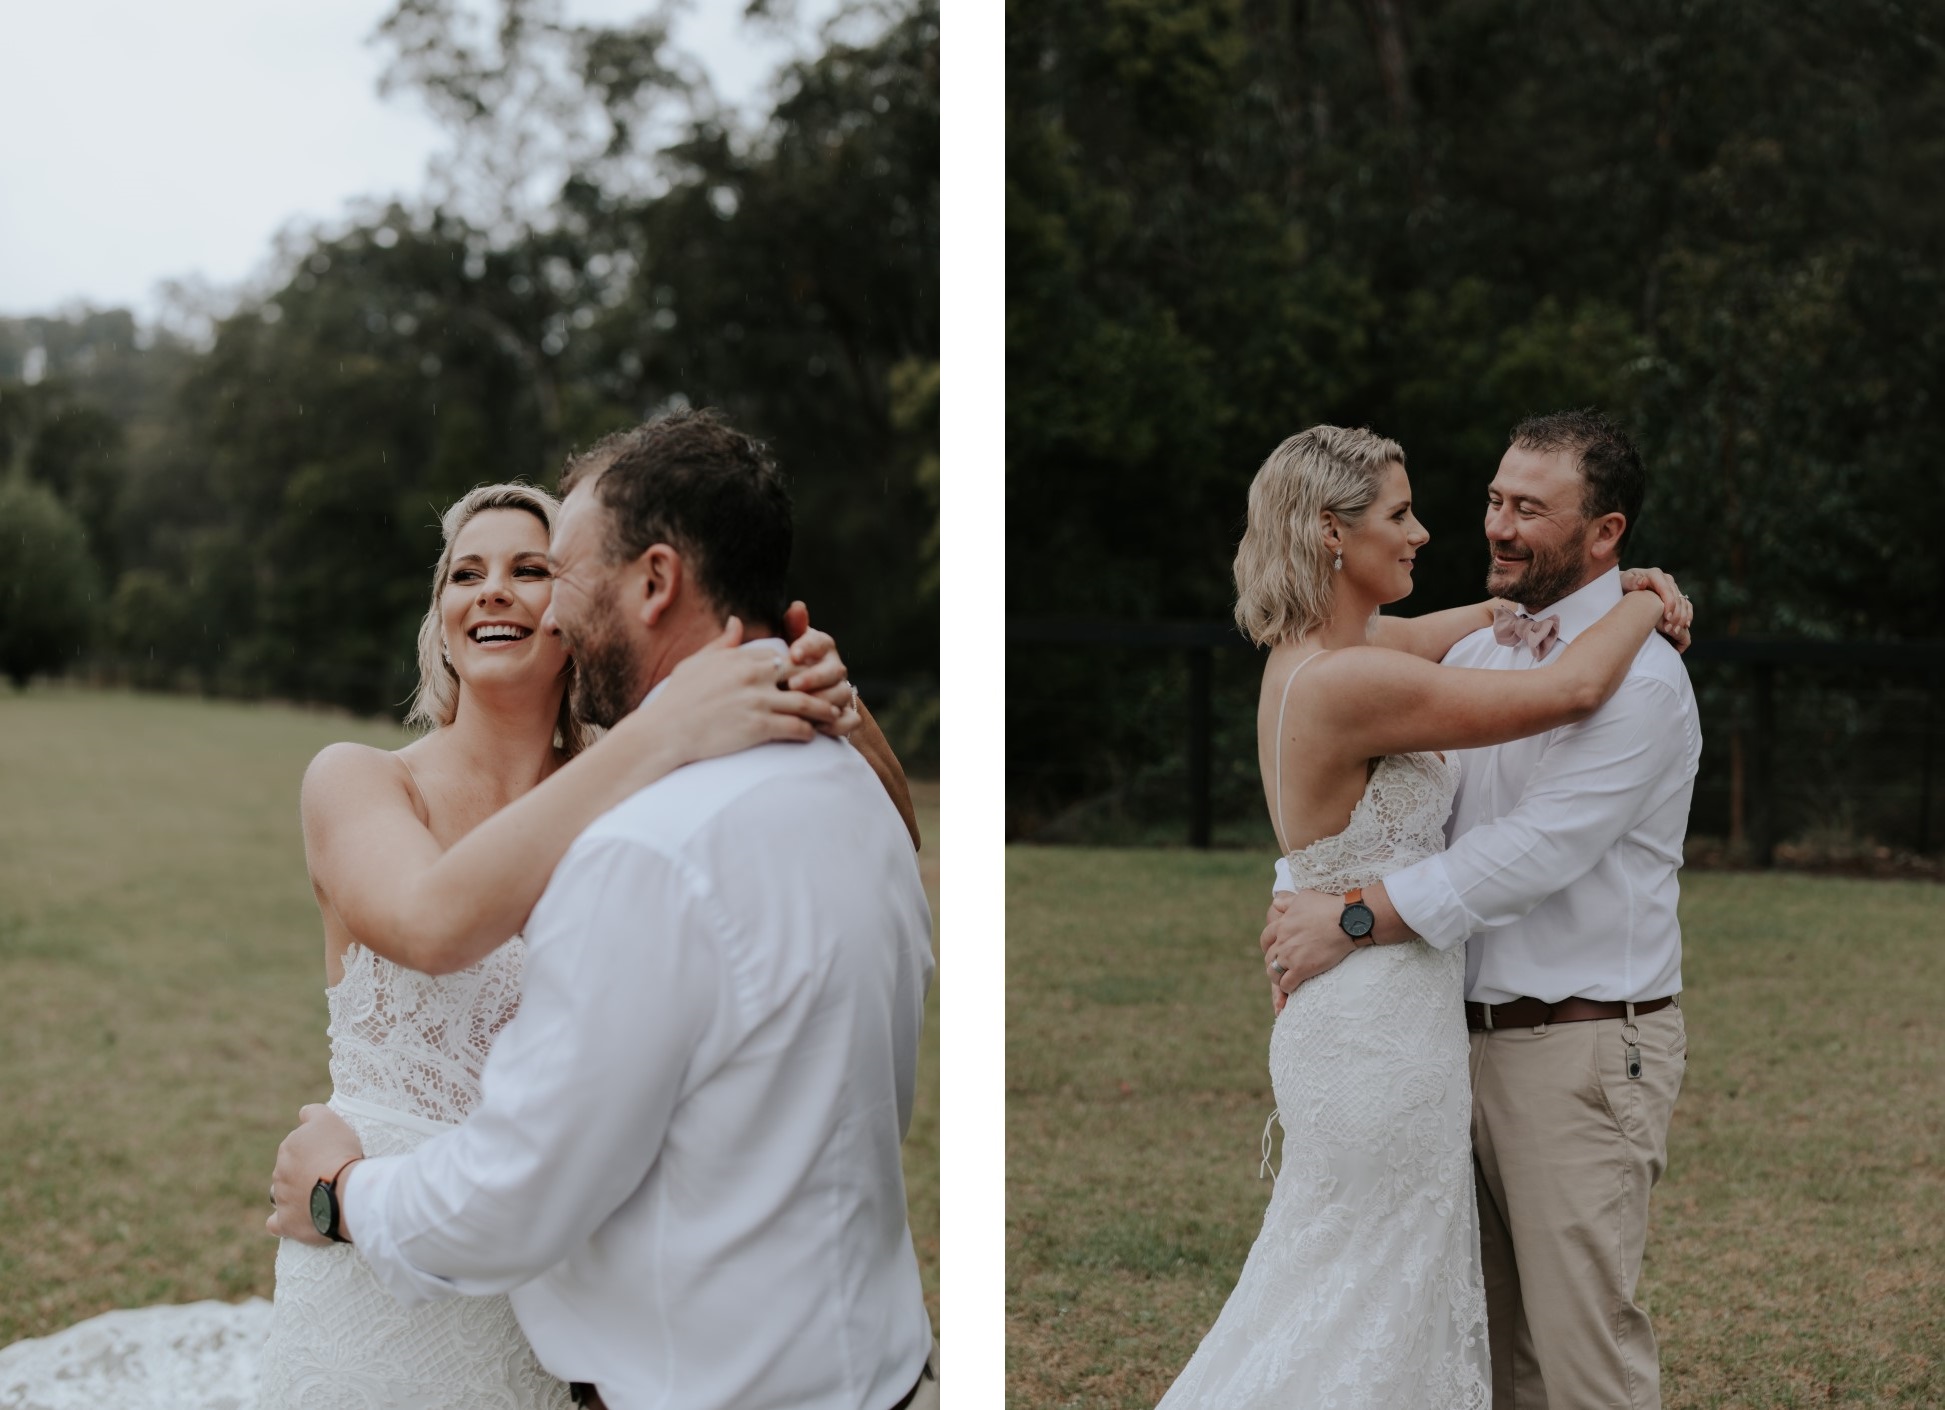 Braut und Bräutigam lächeln und umarmen sich.